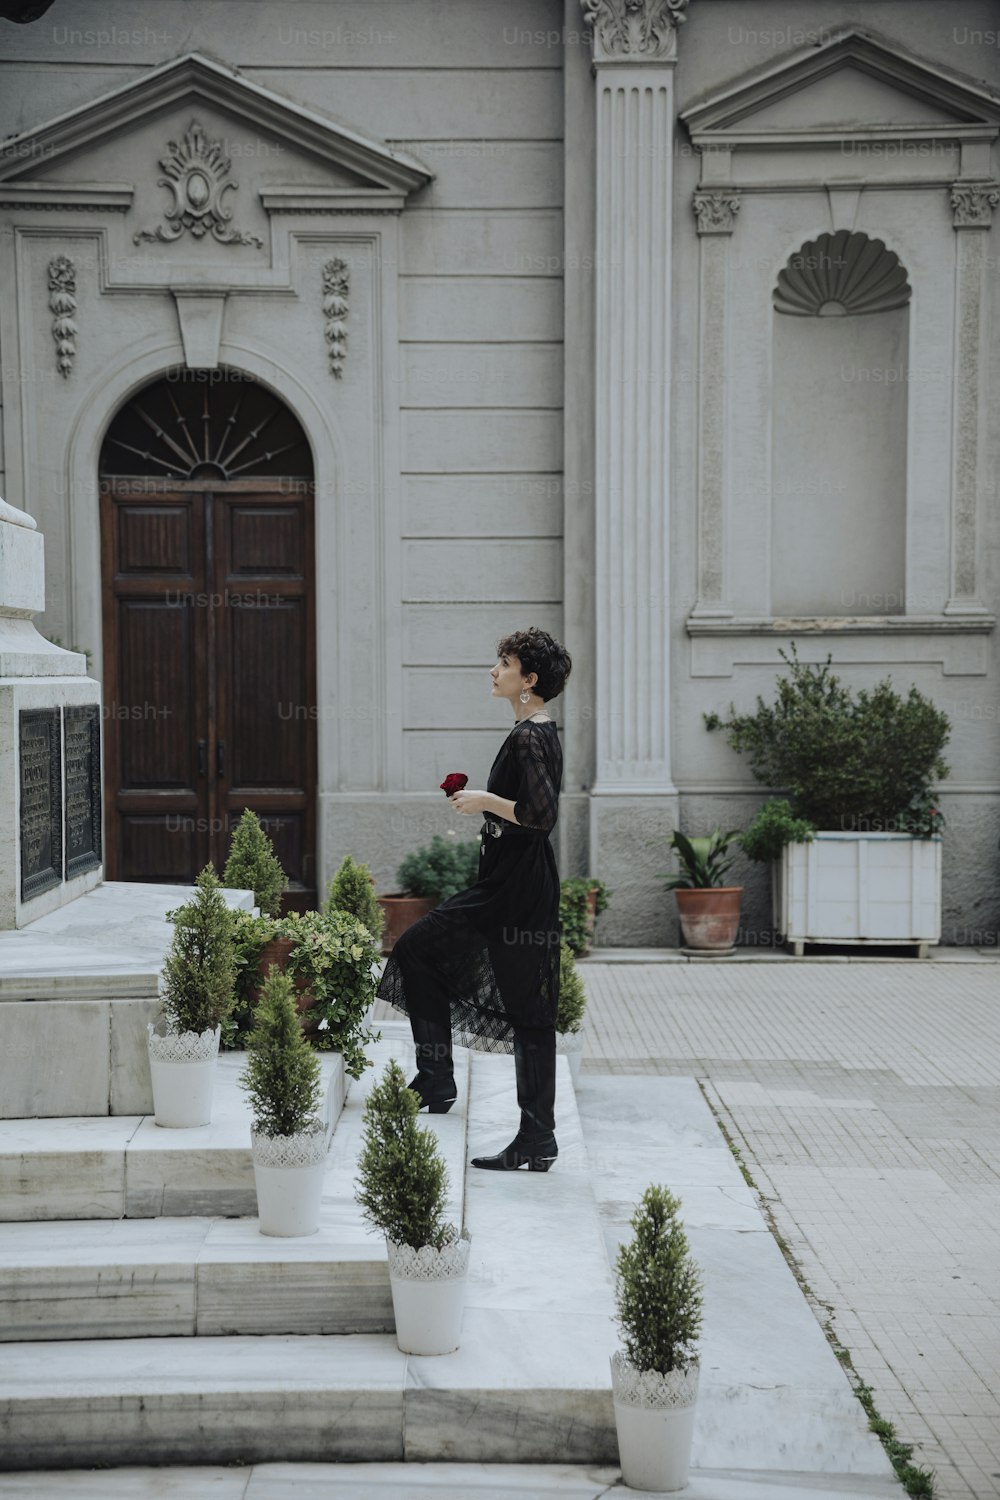 Eine Frau im schwarzen Kleid steht vor einem Gebäude